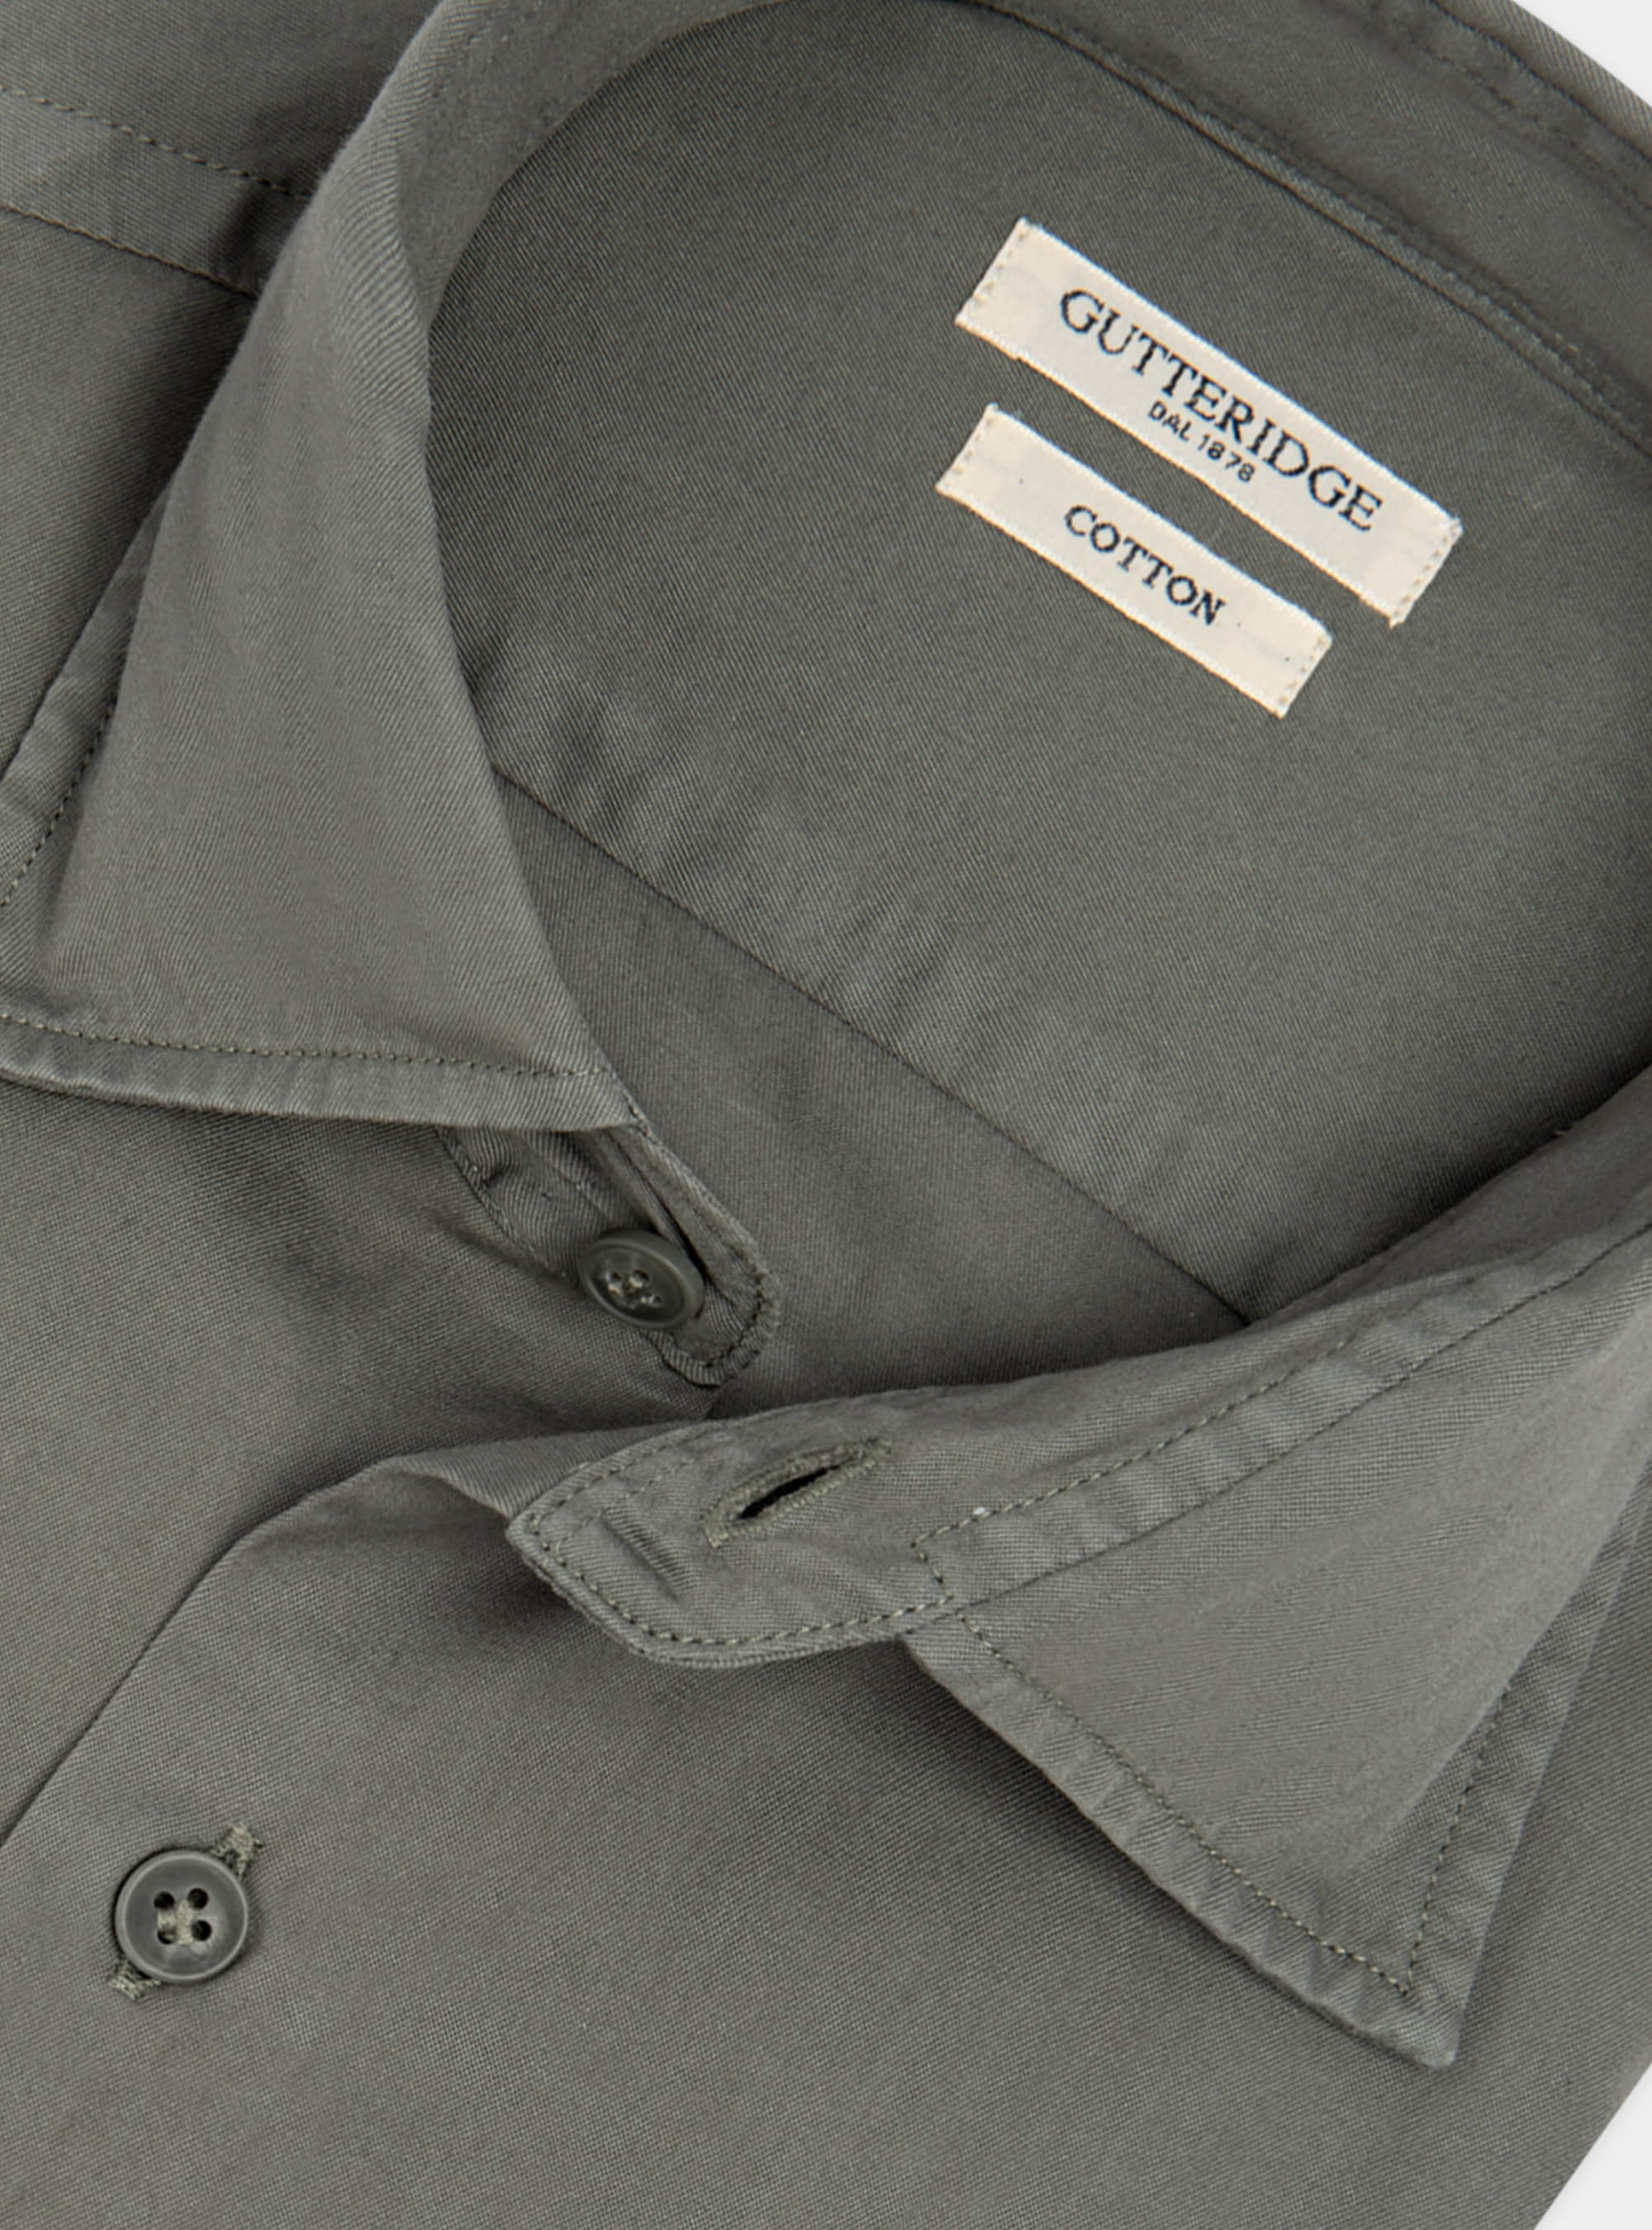 Camicia collo italiano in cotone tinto in capo | Gutteridge | Camicie Uomo